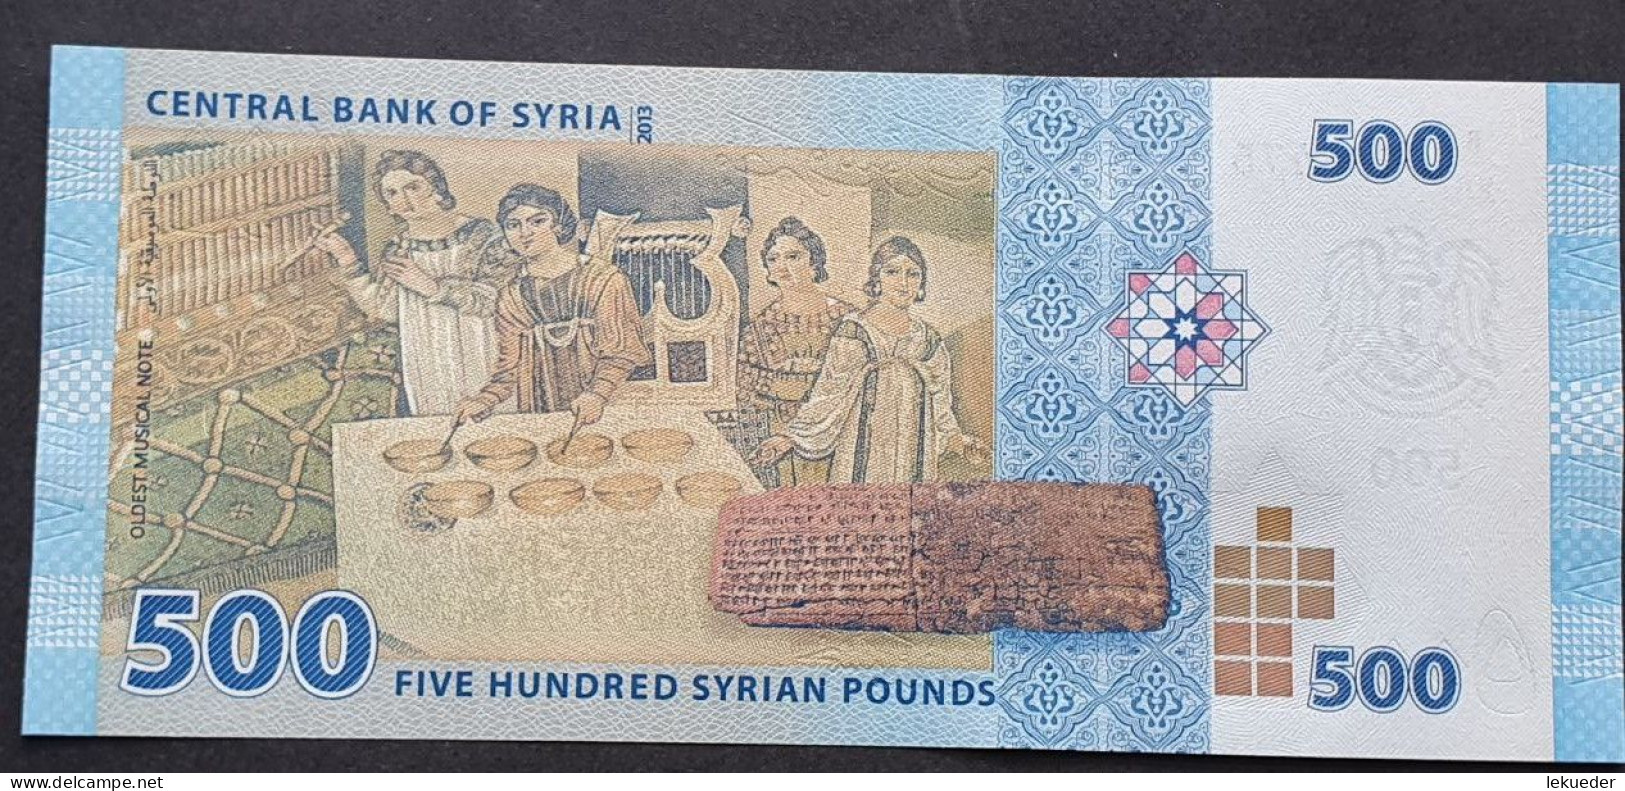 Billete De Banco De SIRIA - 500 Syrian Pounds, 2013  Sin Cursar - Siria